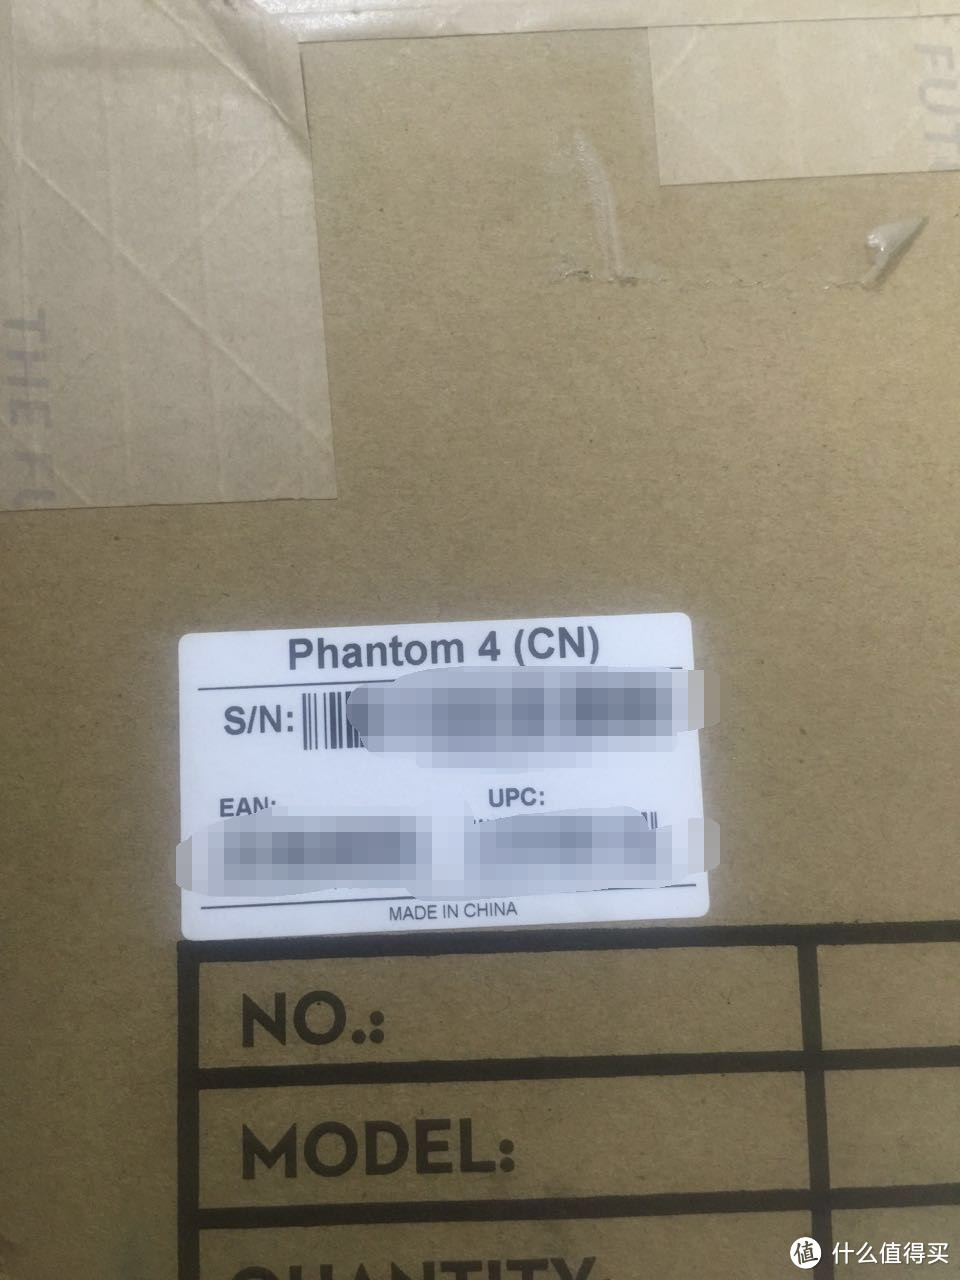 #本站首晒# DJI 大疆 Phantom 4 航拍飞行器